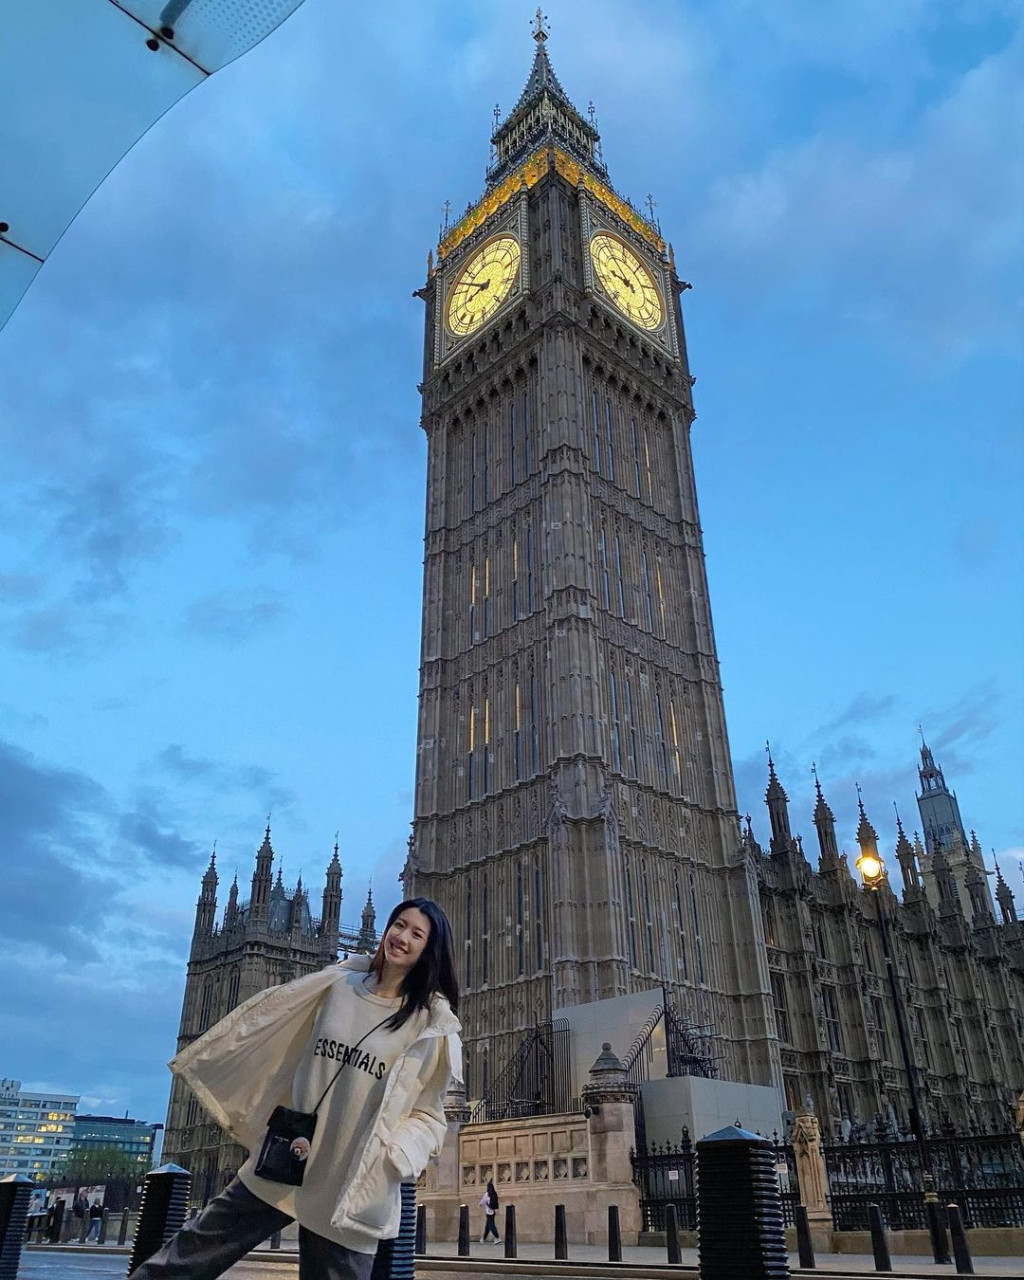 蔡思貝在6月中出發到英國及意大利合共9個城市拍攝《貝遊歐洲》。